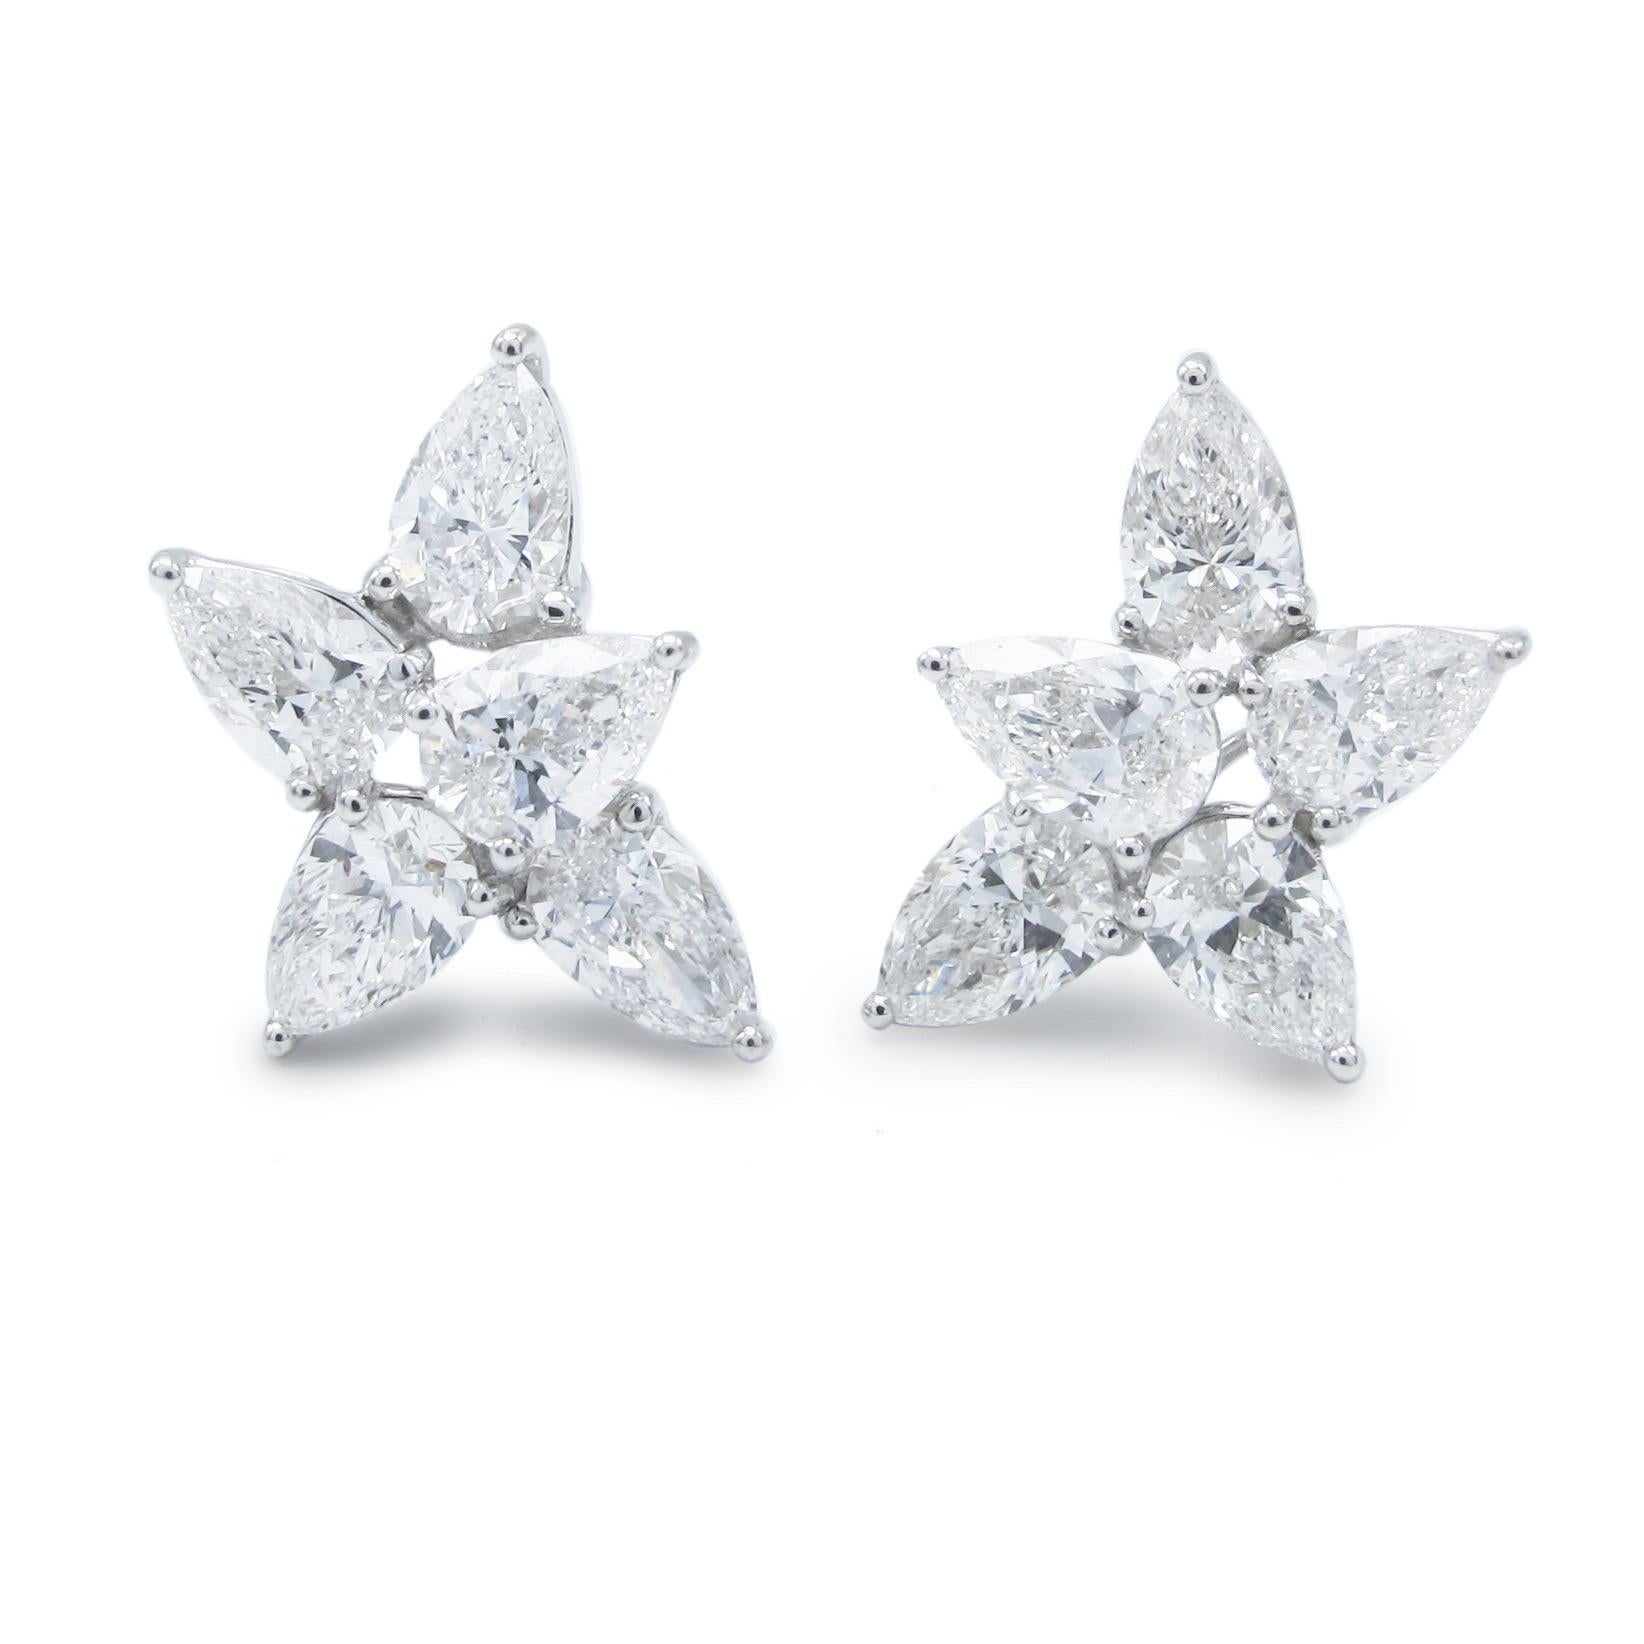 Aus dem Tresor von Emilio Jewelry in der berühmten New Yorker Fifth Avenue,
Jeder Diamant ist Gia zertifiziert
.50ct jeweils von Farbe D-F 
Klarheit vs2 oder besser 
 18KT Gold

Bitte erkundigen Sie sich nach weiteren Einzelheiten. Alle Stücke